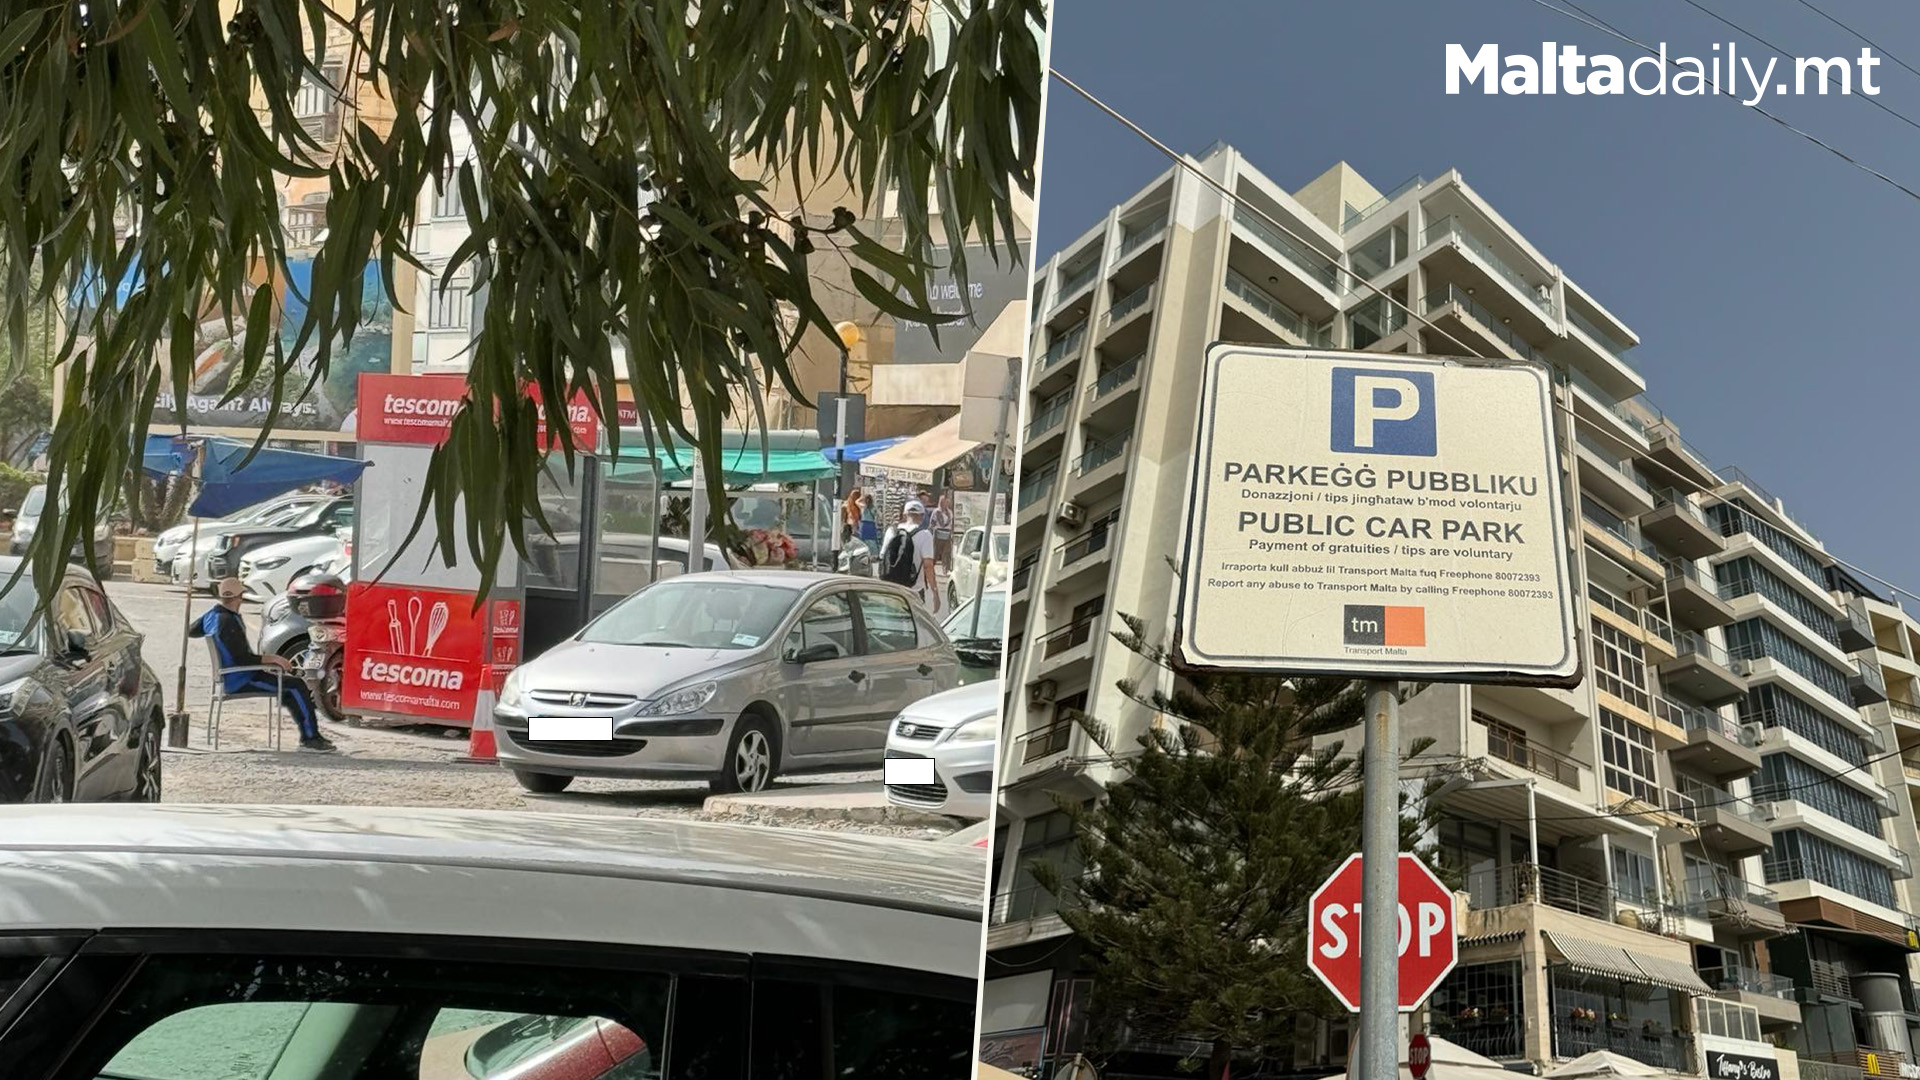 Sliema Public Parking Attendants Asking For €2 Raises Concerns